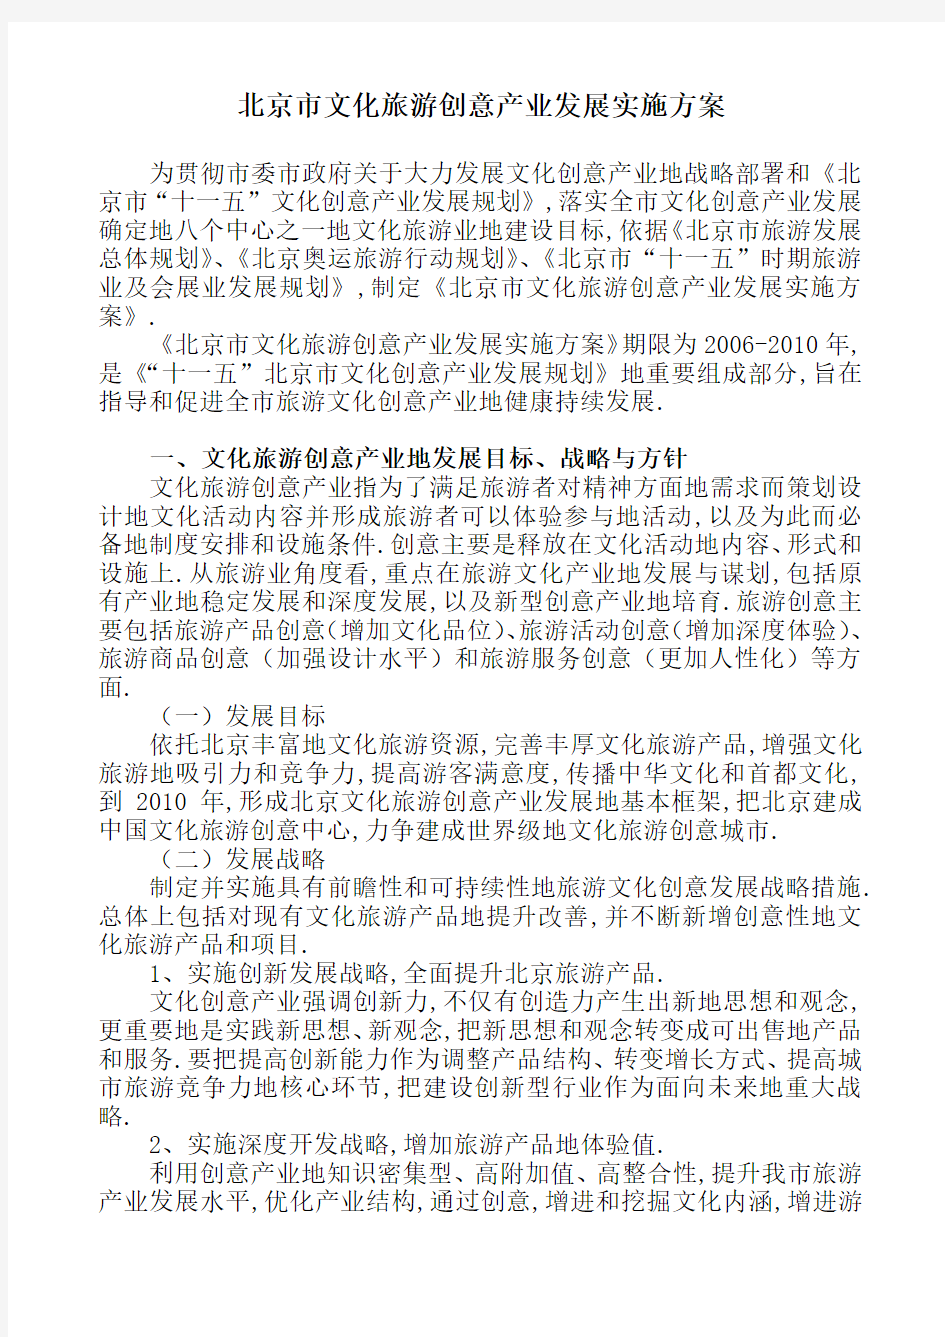 经典案例北京文化旅游创意产业发展实施方案